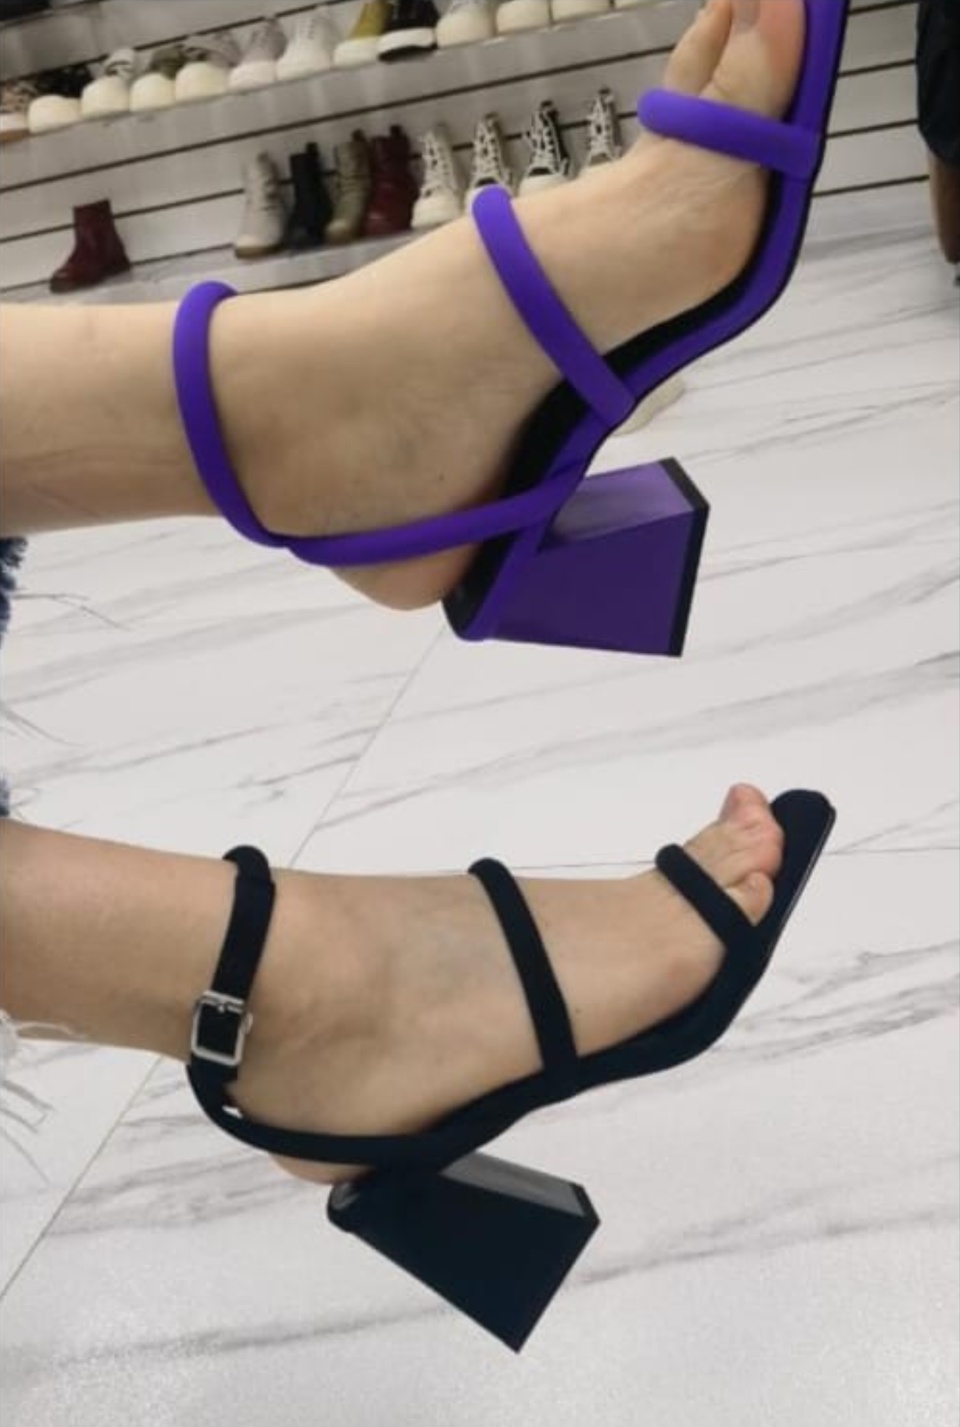 Босоножки на устройчивом каблуке фиолетовый цвет - 3 500 ₽, заказать онлайн.